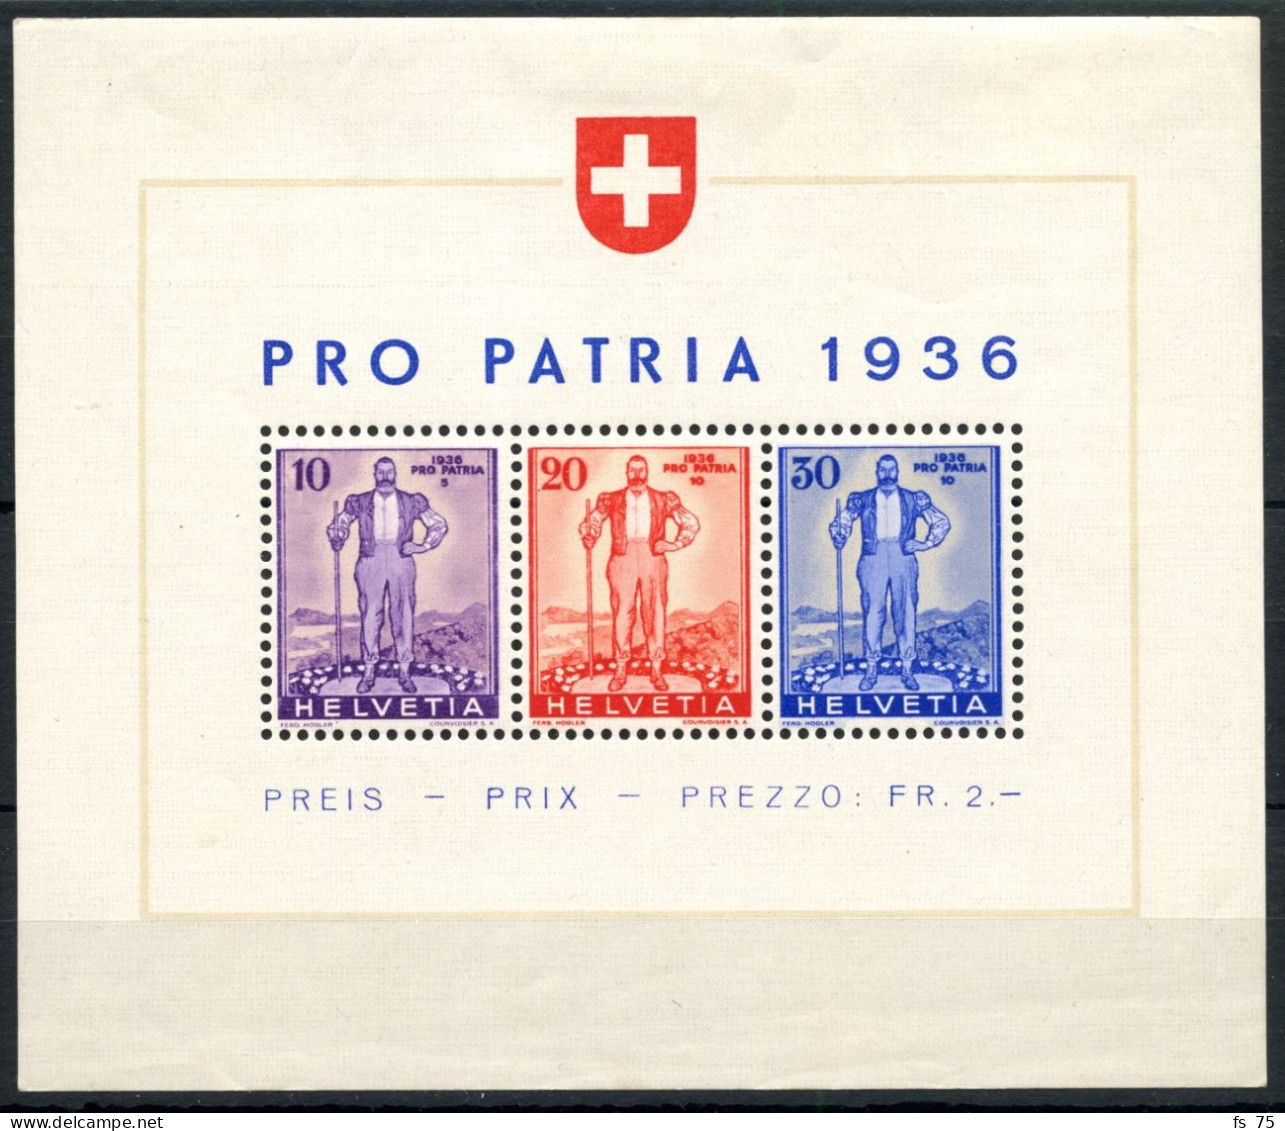 SUISSE - BLOC W 8 - PRO PATRIA 1936 - AVEC CHARNIERE - Blocchi & Foglietti